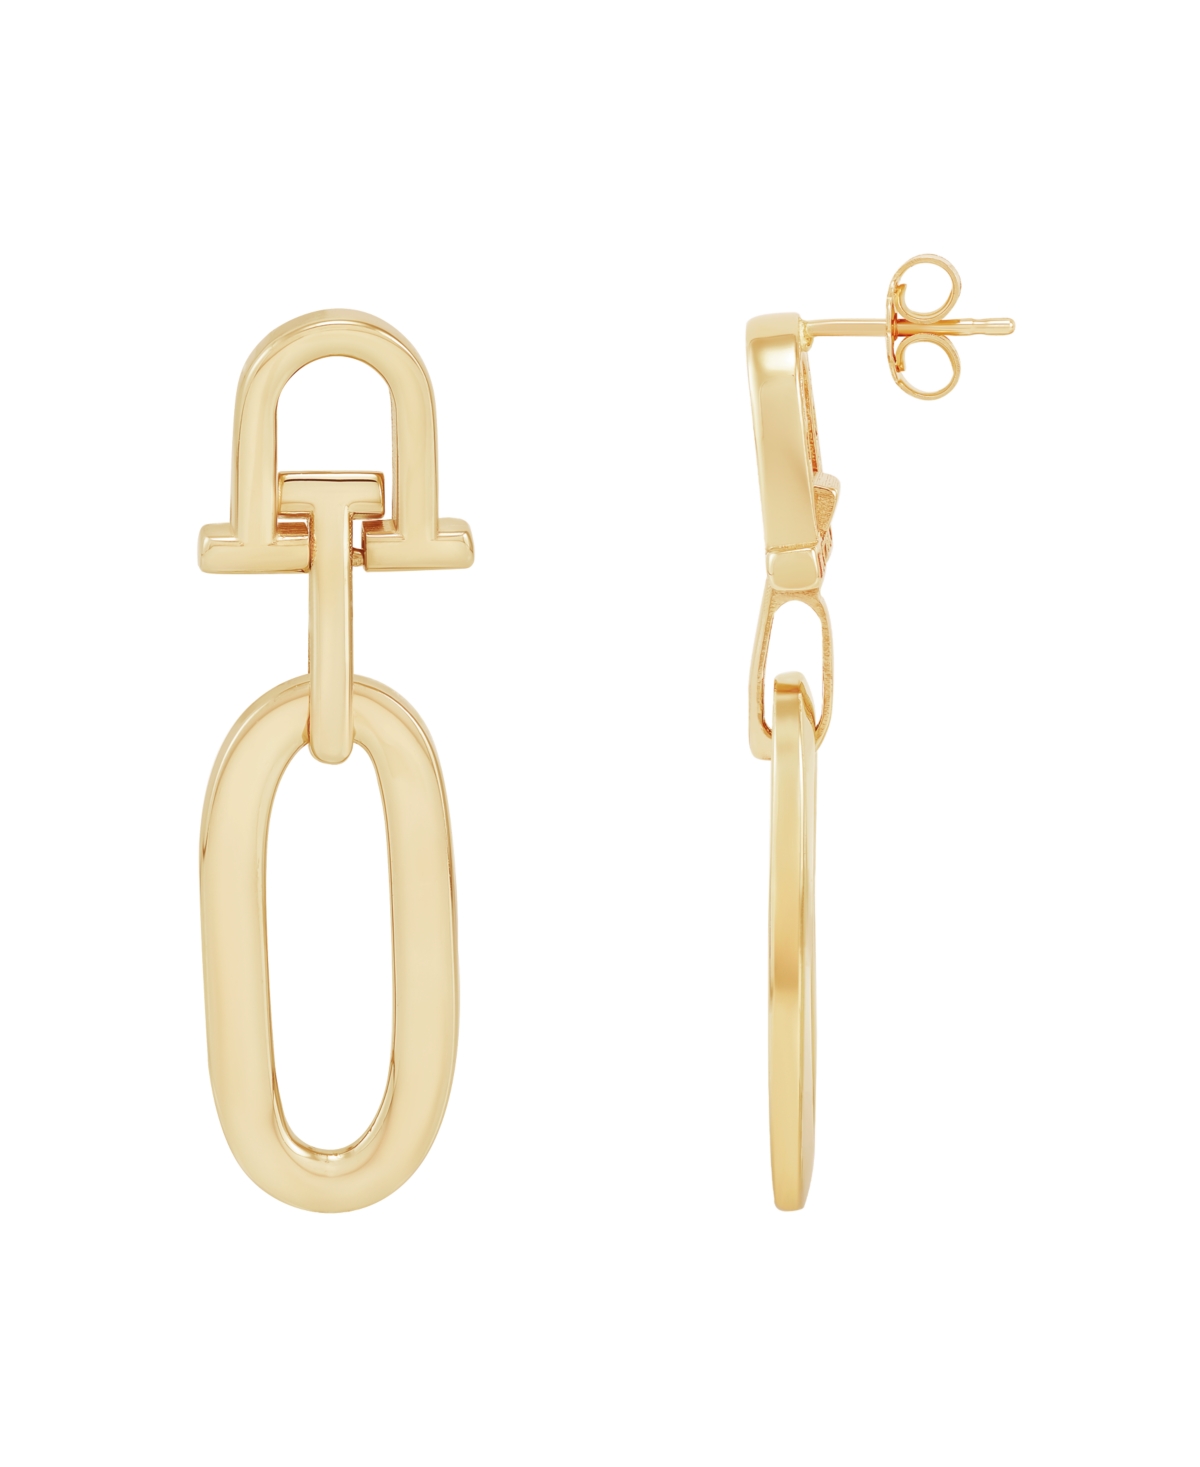 Polished Door Knocker Dangle Drop Earrings in 10k Gold - Gold